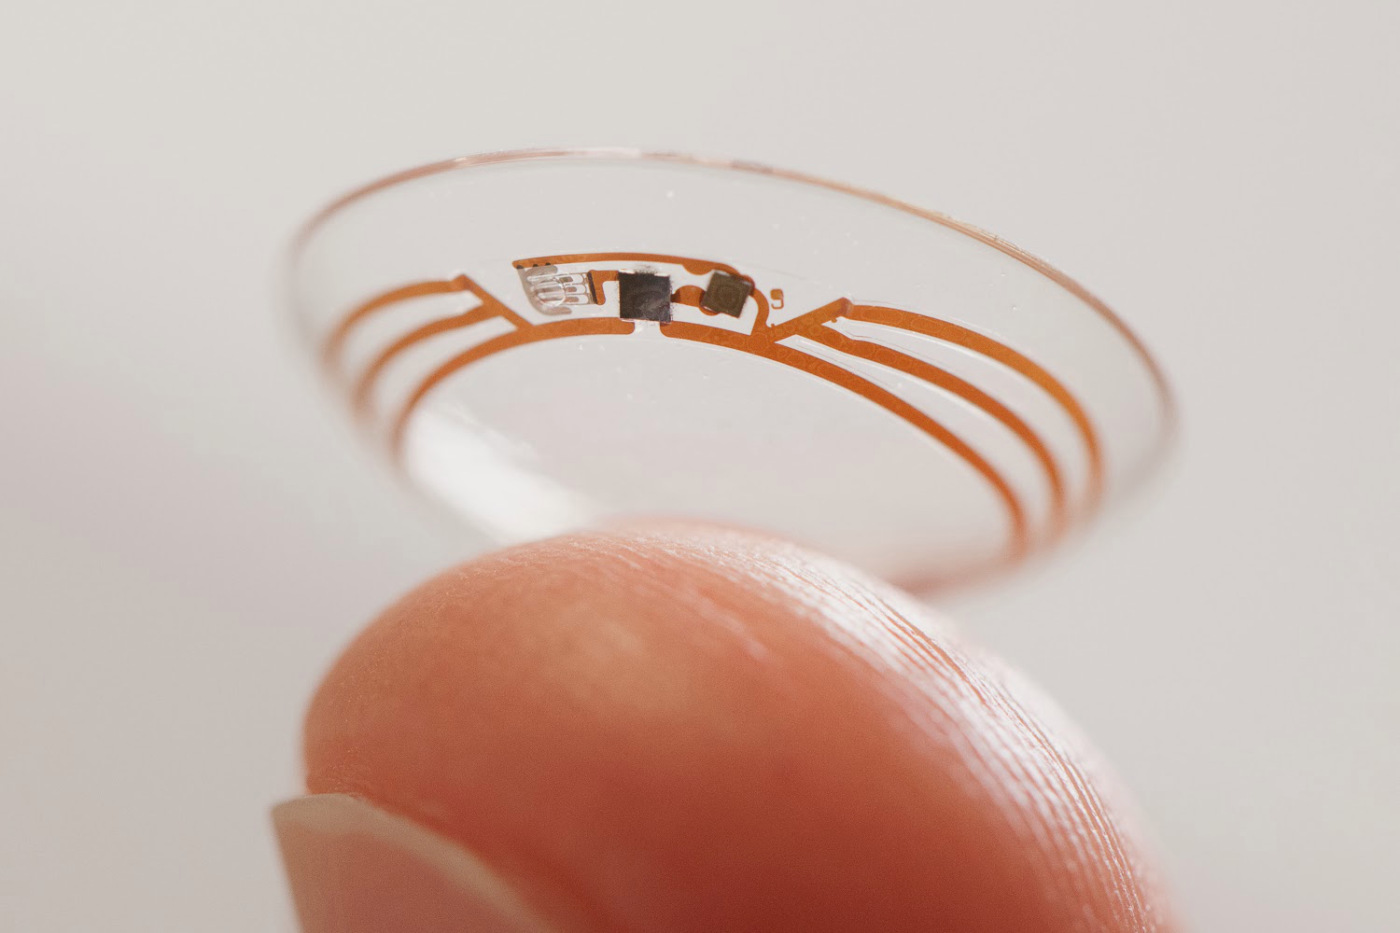 Google smart contact lenses